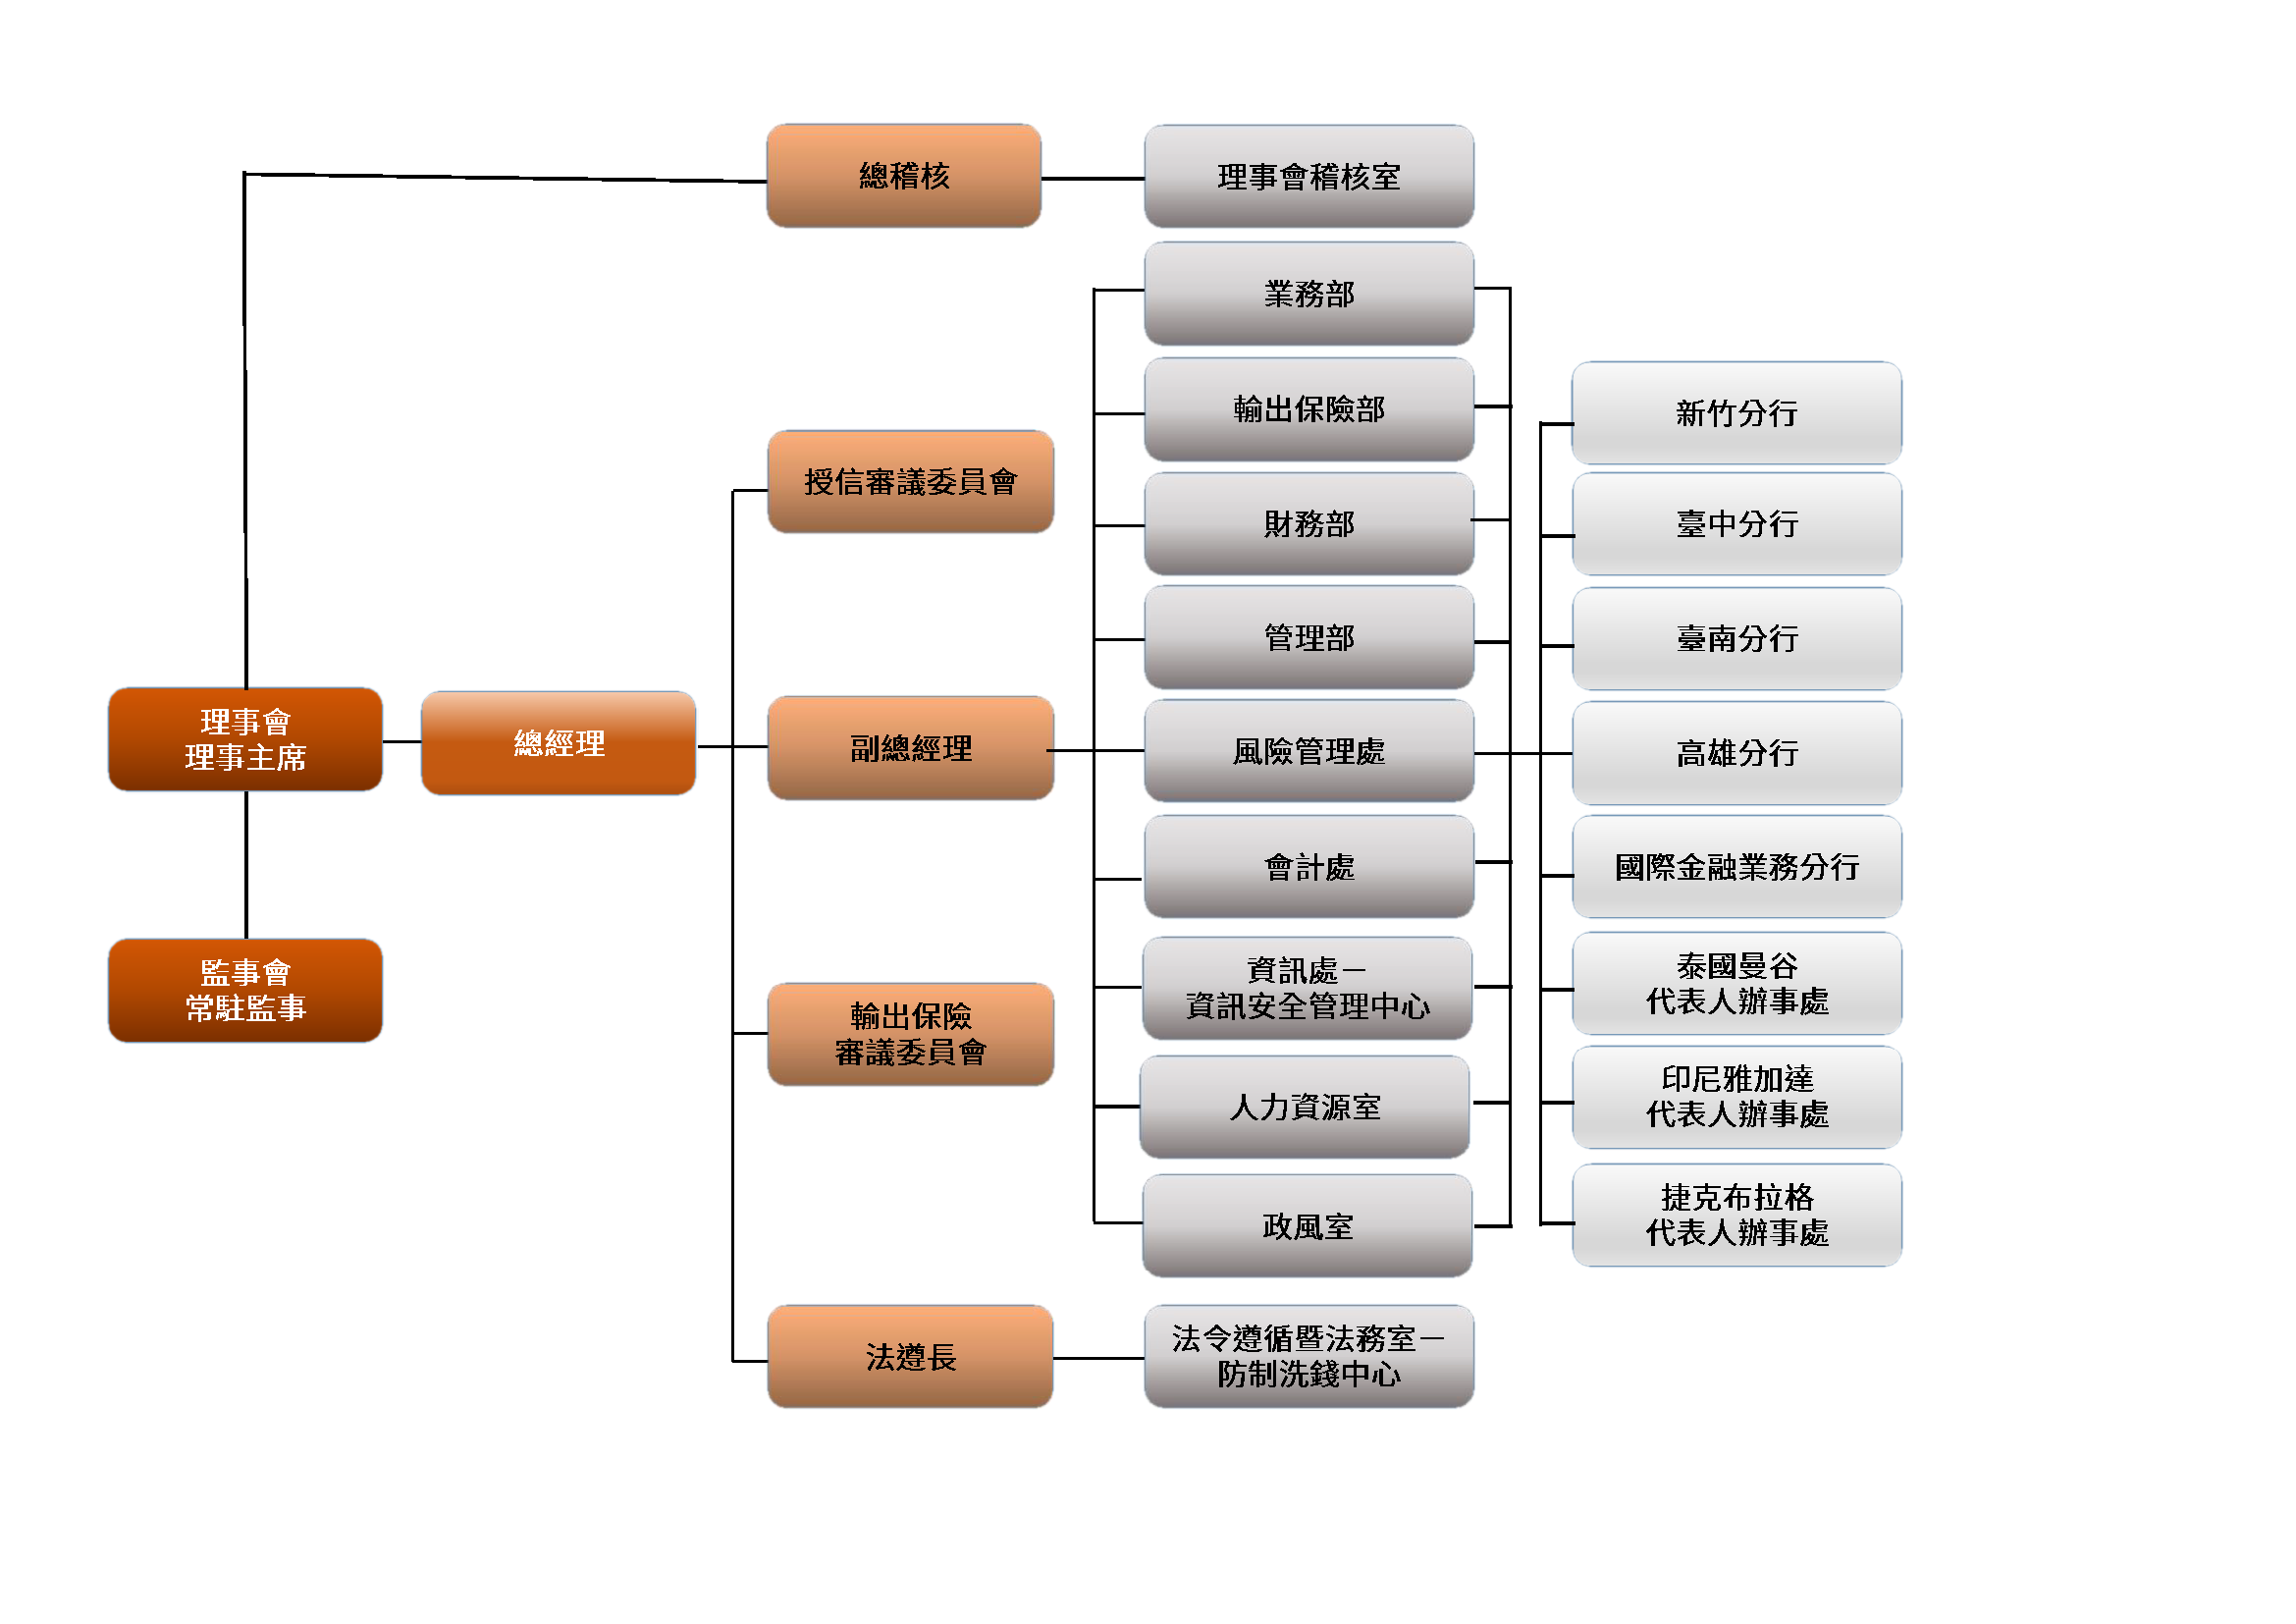 本行中文組織圖